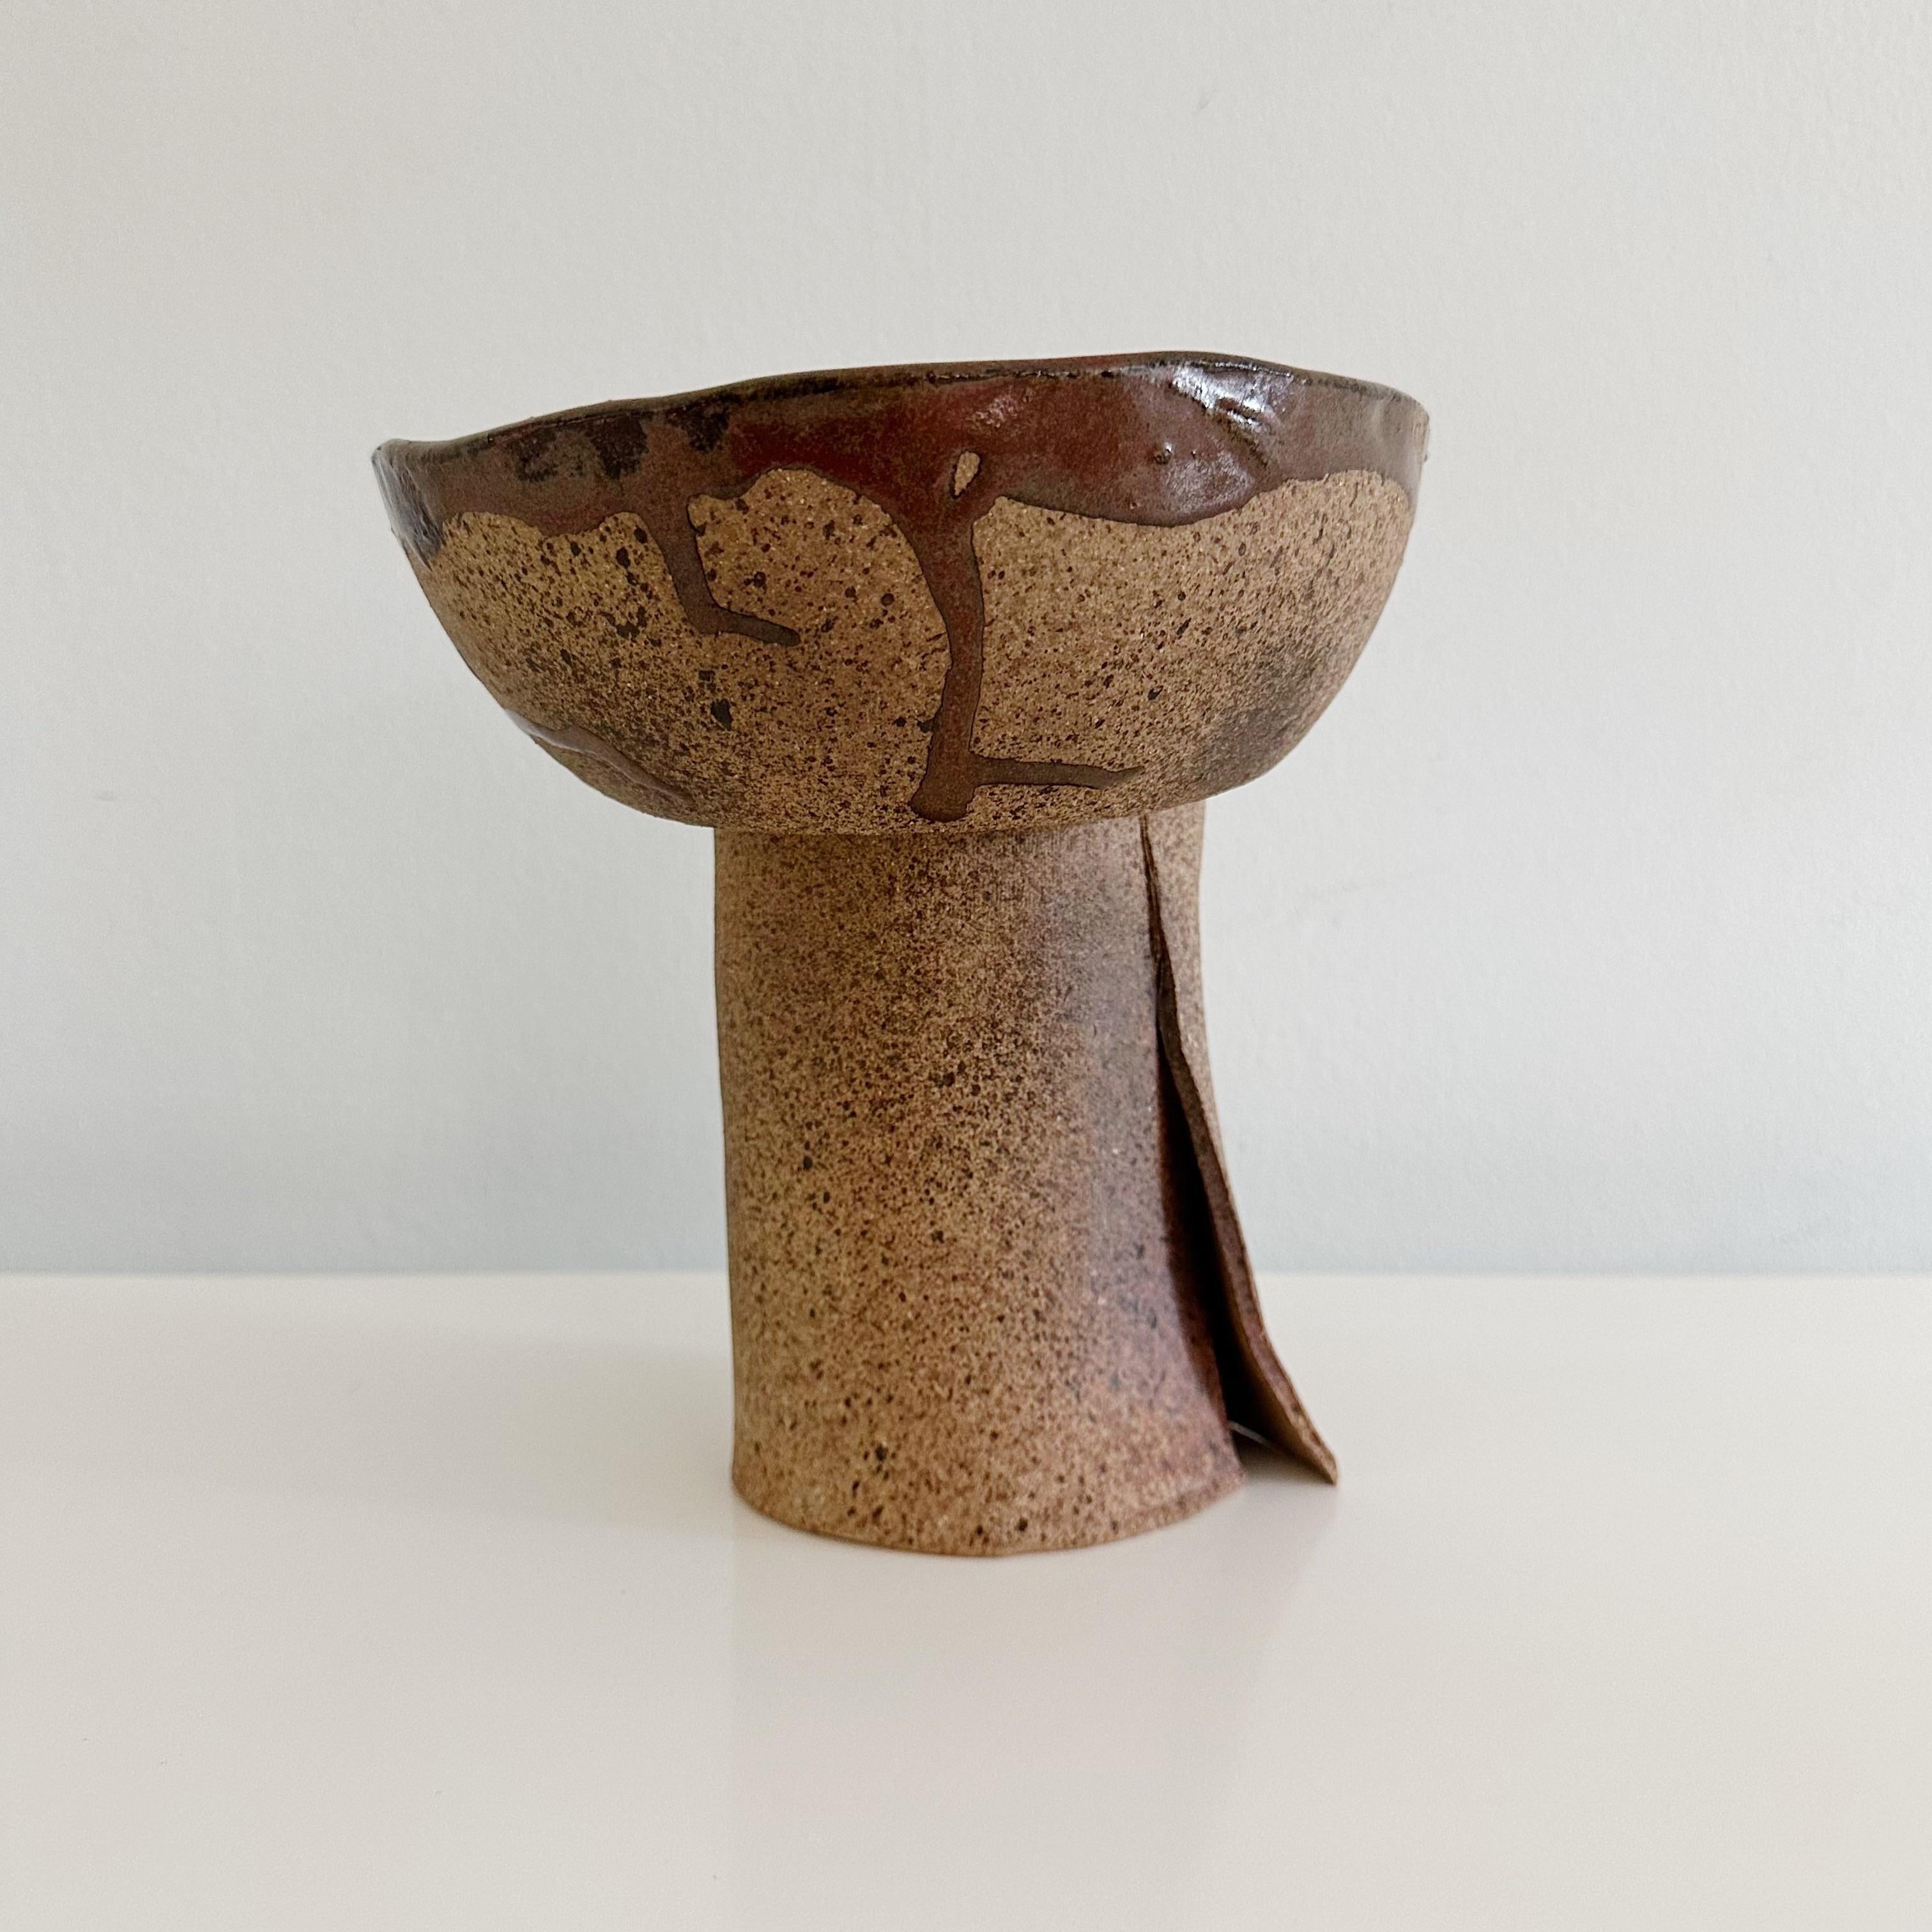 Abstrakte Vintage Studio Pottery Organische Skulptur Schale von Ruth Joffa (1920-2017)

Eine einzigartige Studio-Töpferschale, innen glasiert, außen unglasiert. Geschaffen von der bekannten Bildhauerin Ruth Joffa. Dieses signierte Werk hat eine